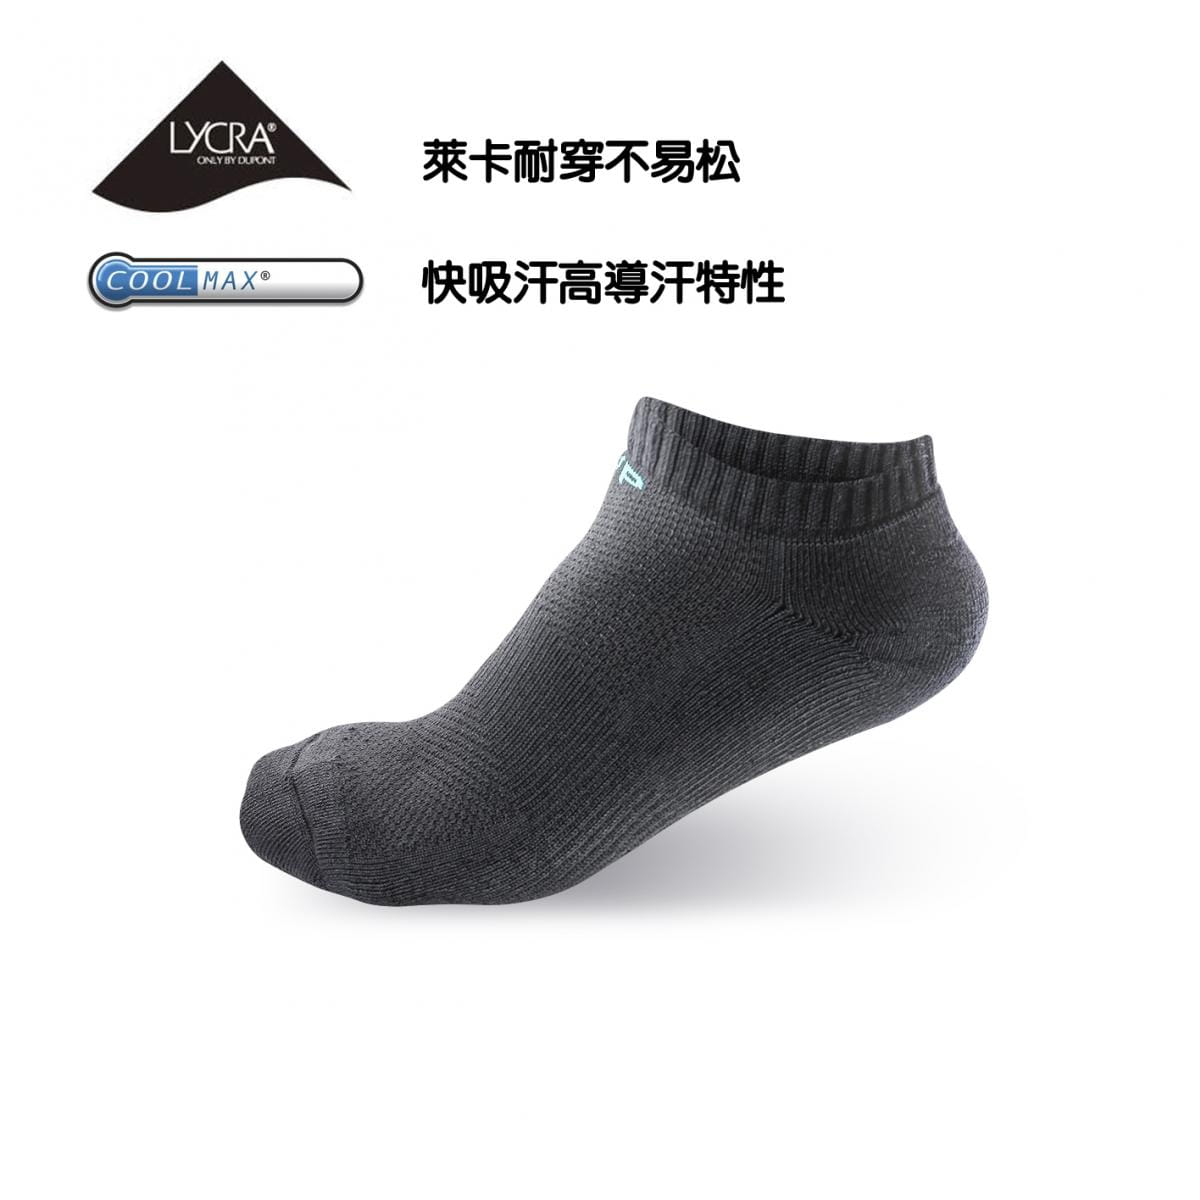 竹炭系列-毛巾厚底船型襪 0